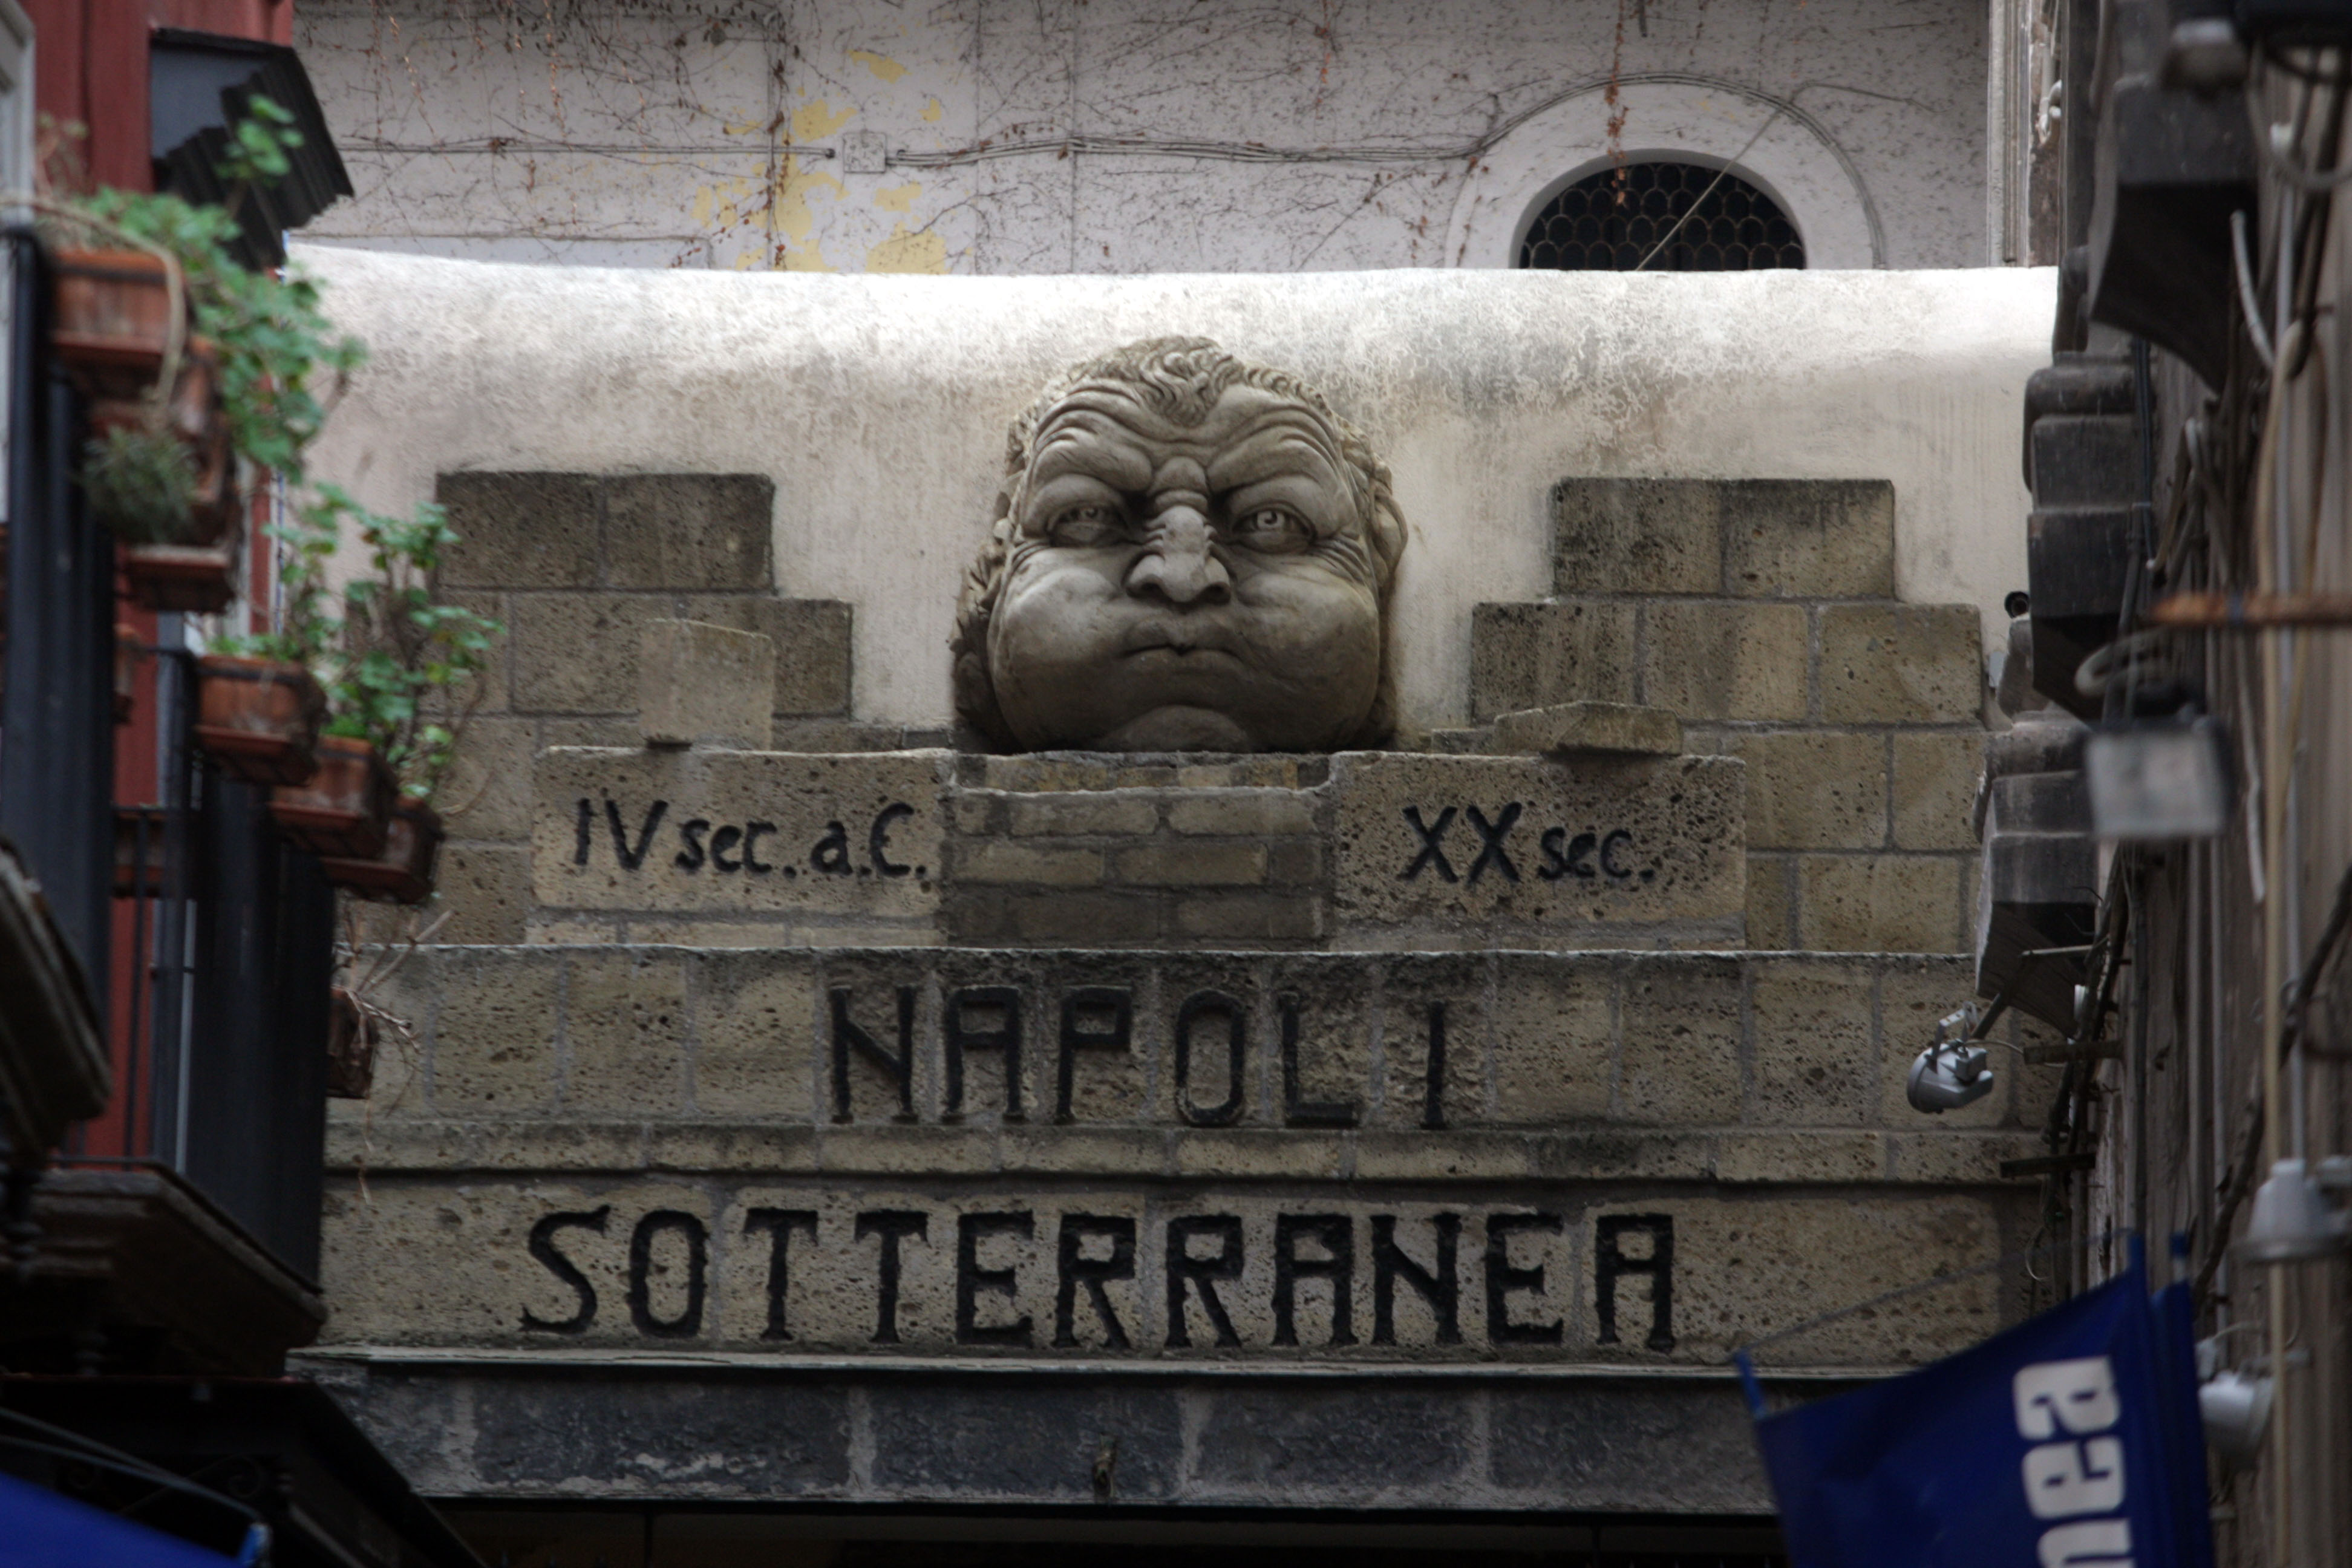 Sotterranea Napoli (Napoli Faoi Thalamh)